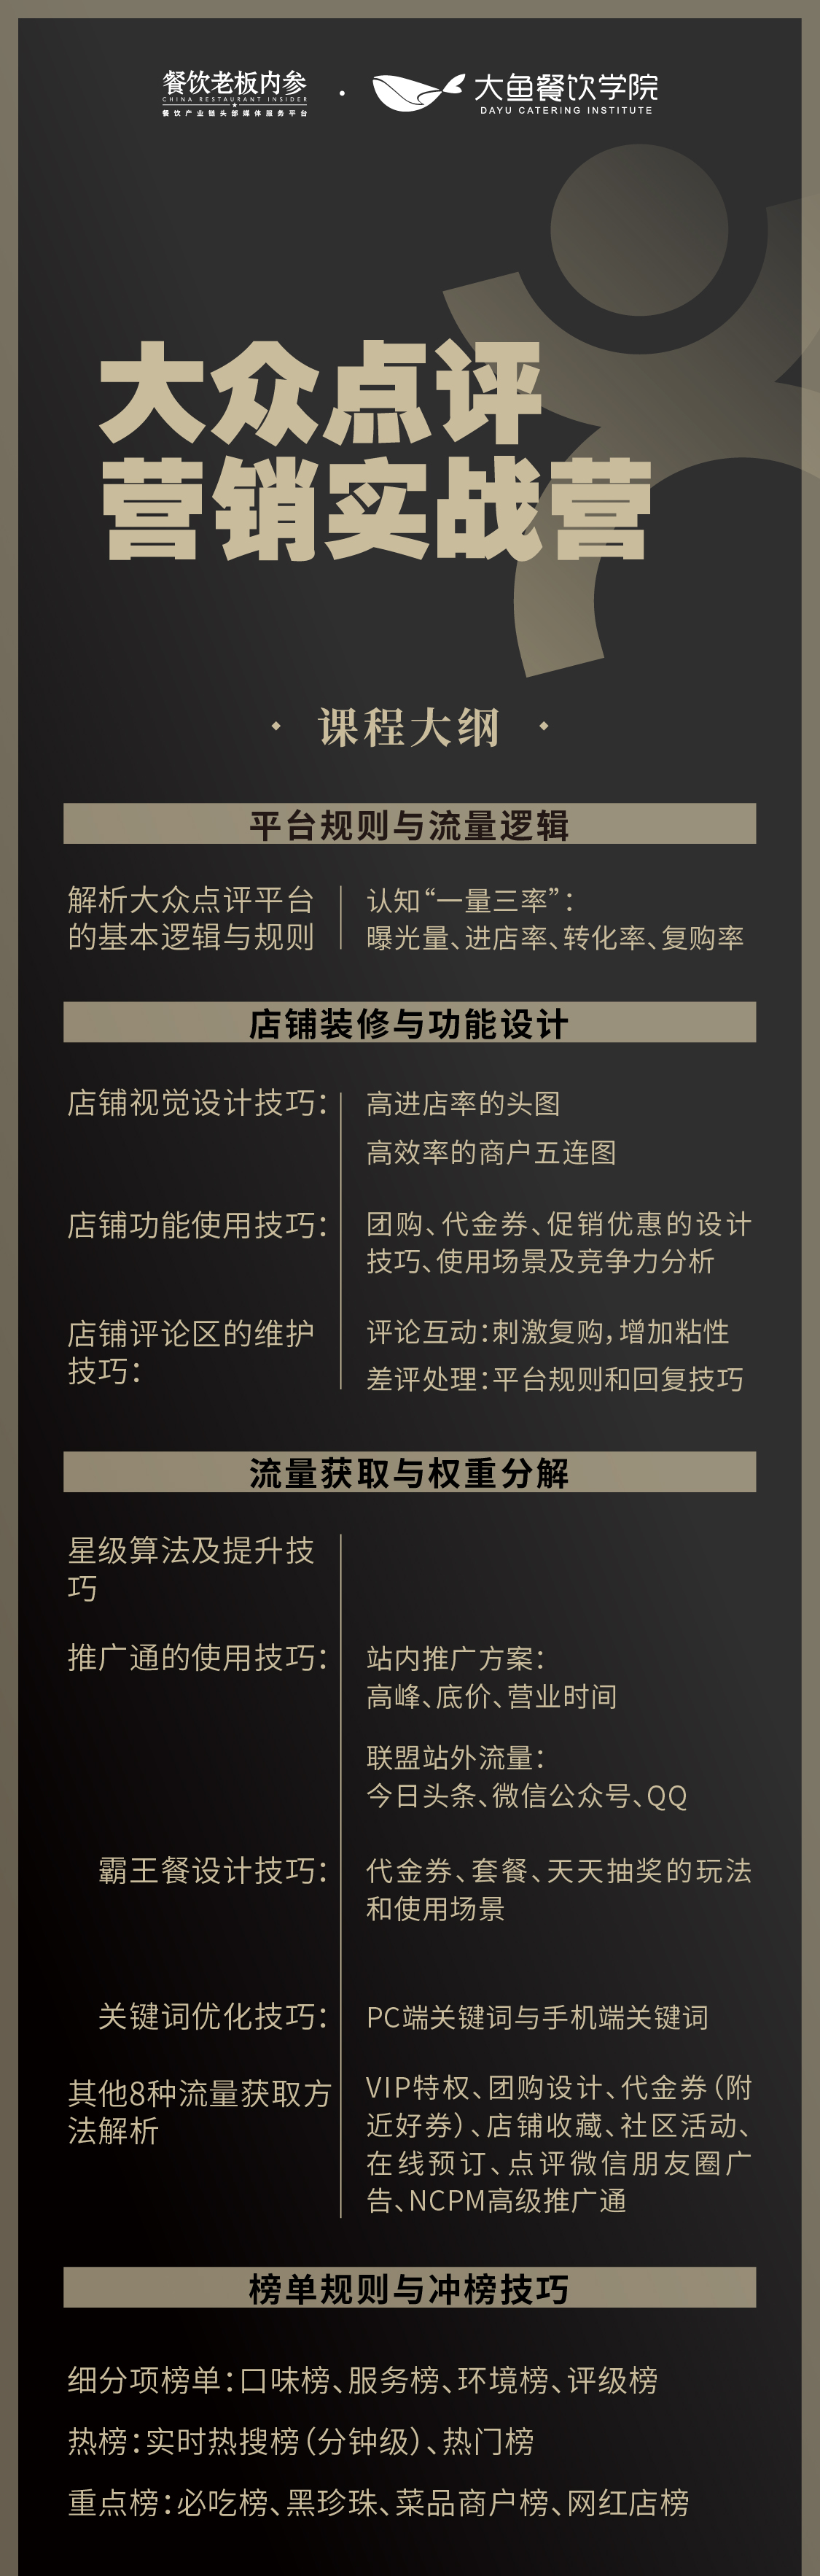 2019大众点评营销实战营（12月北京班）